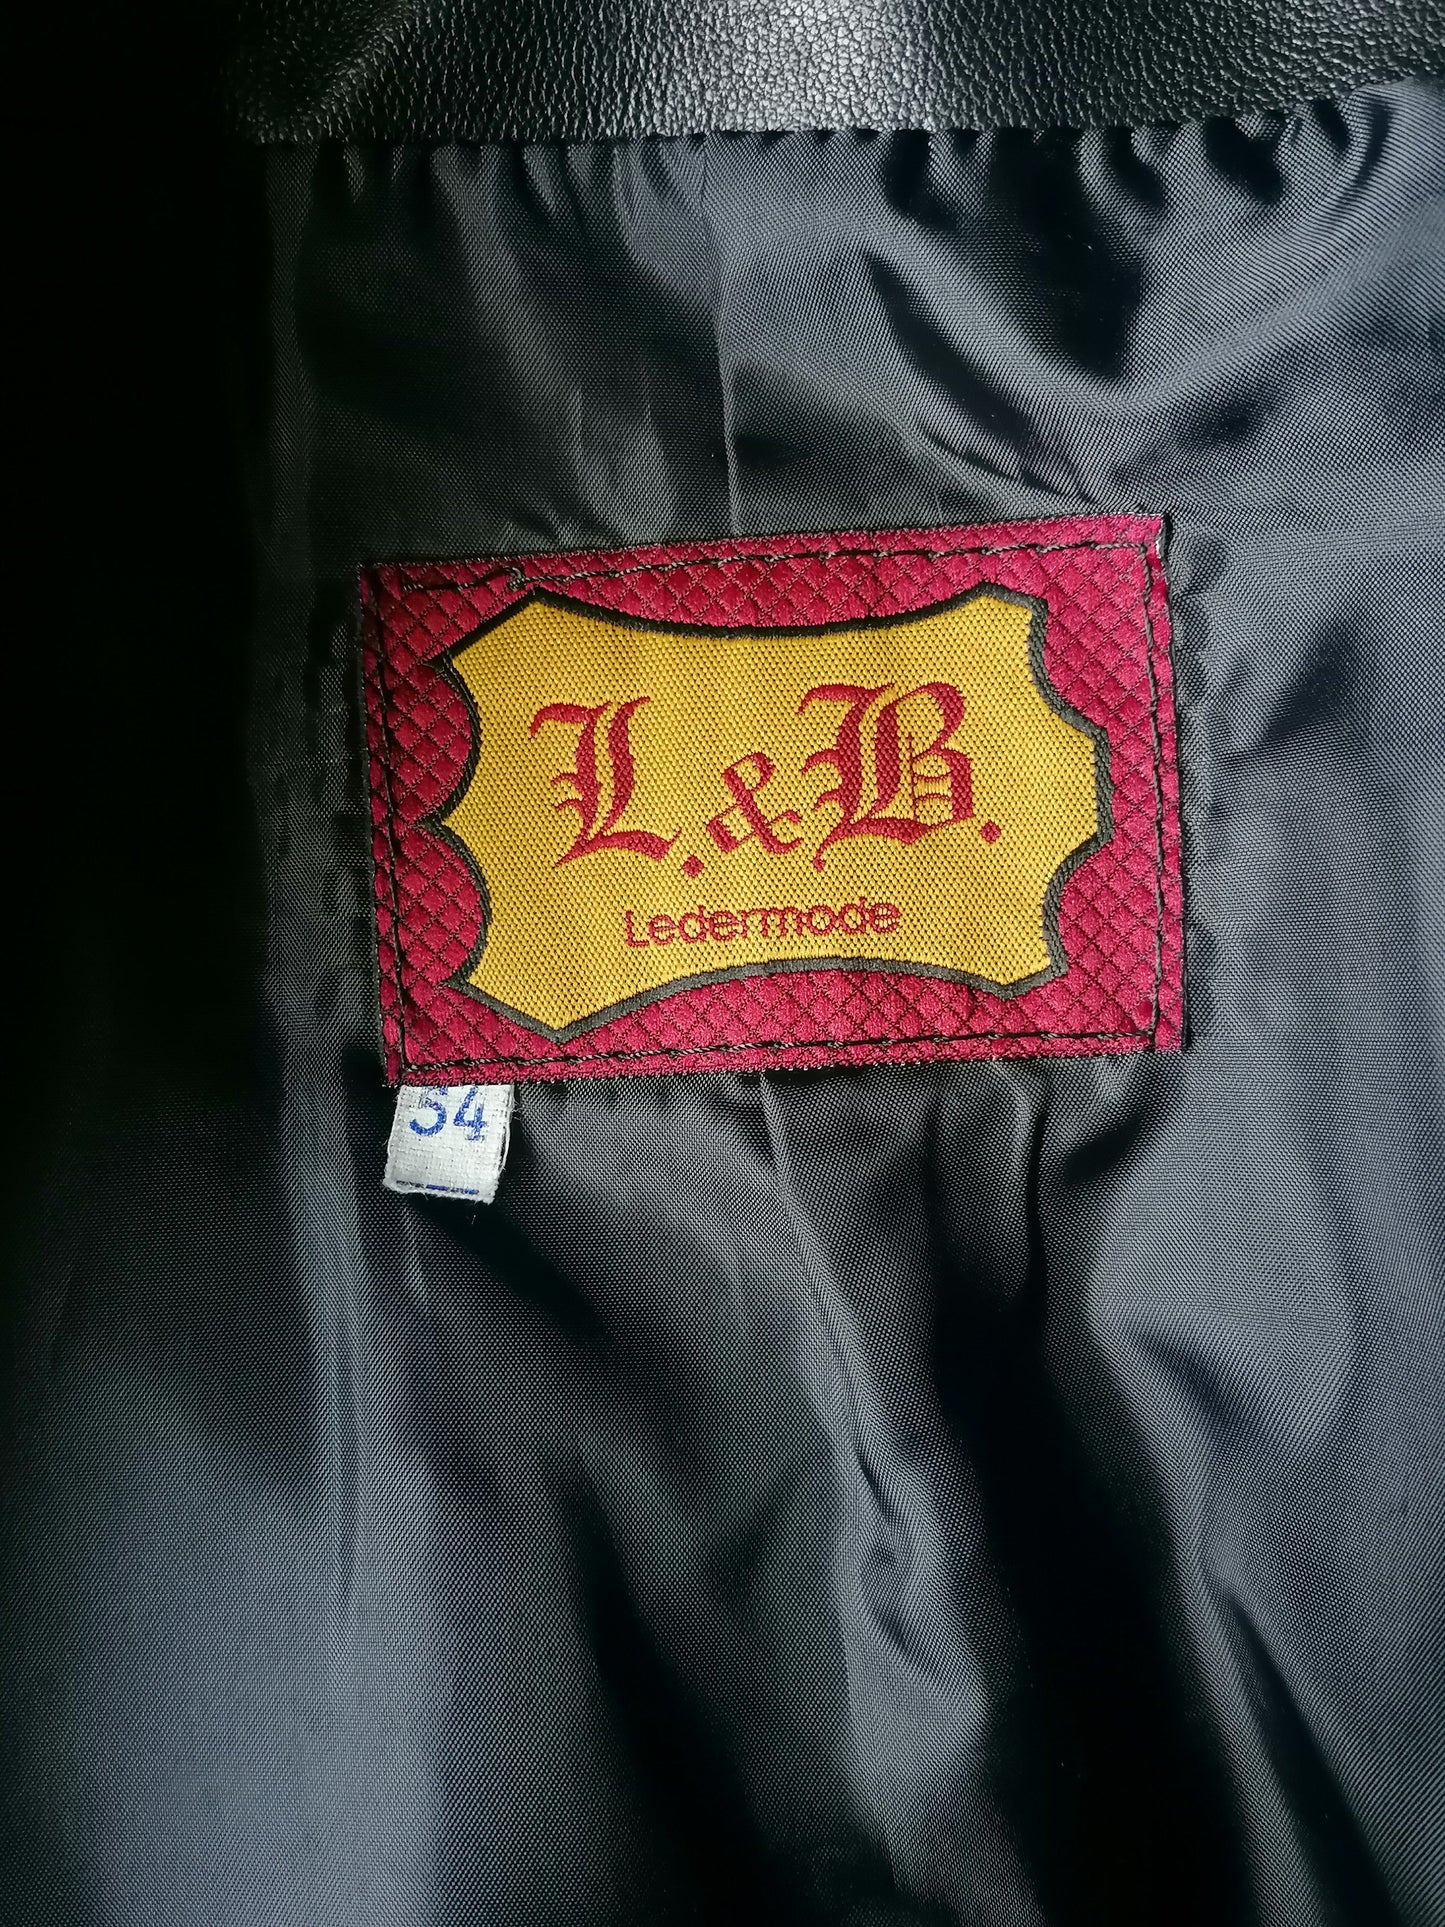 L&B Chaqueta de cuero de moda de cuero con botones. Cuero negro suave y suave. Tamaño 54 / L.